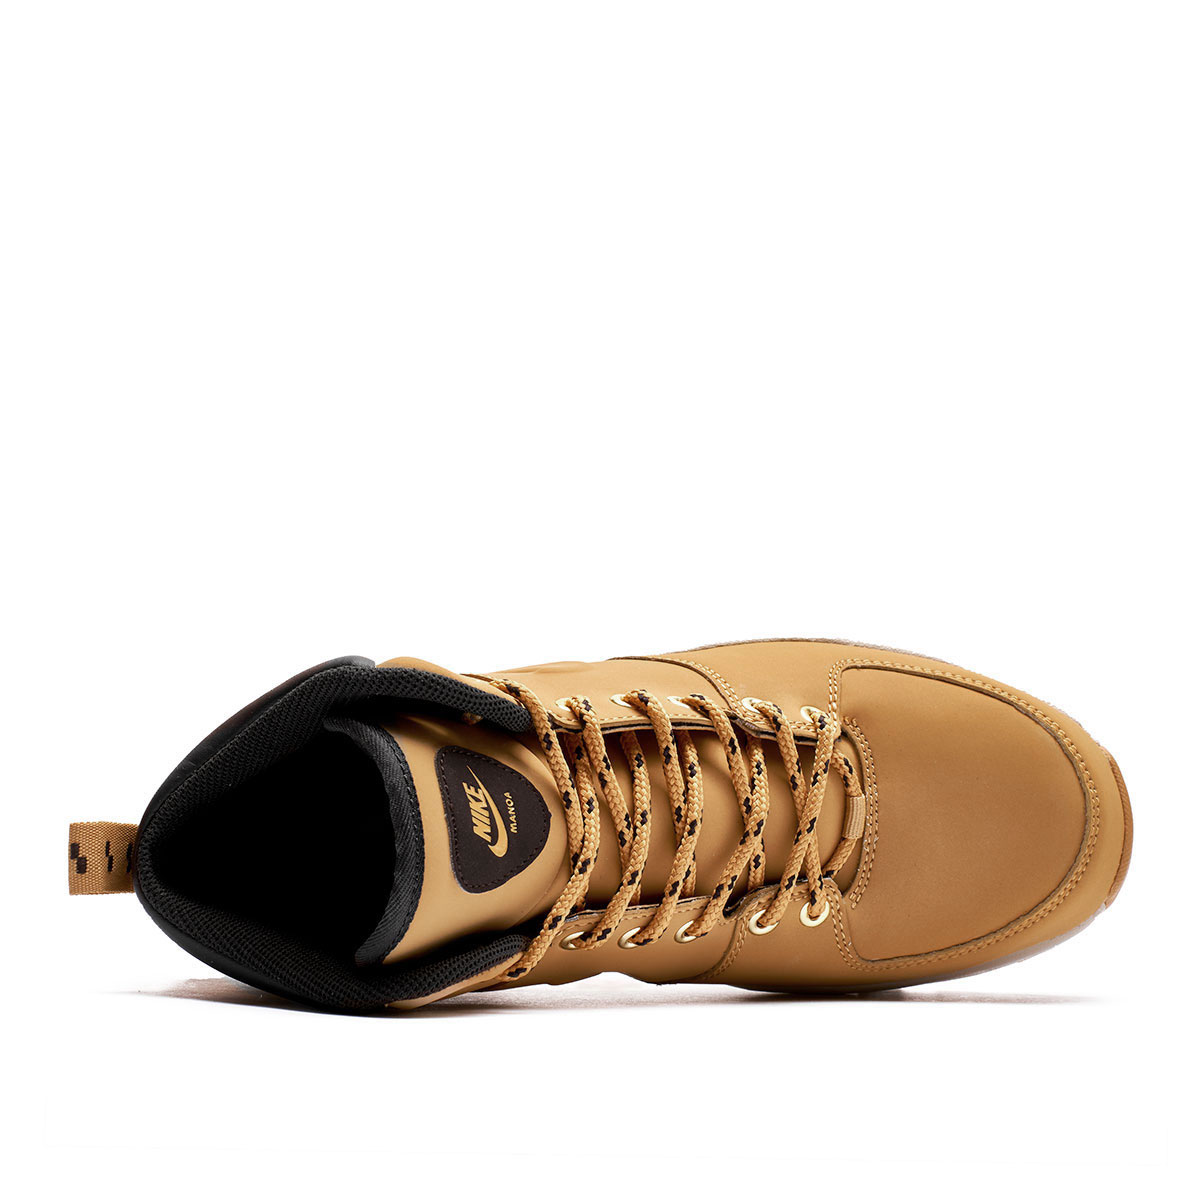 Nike Manoa Leather  454350-700